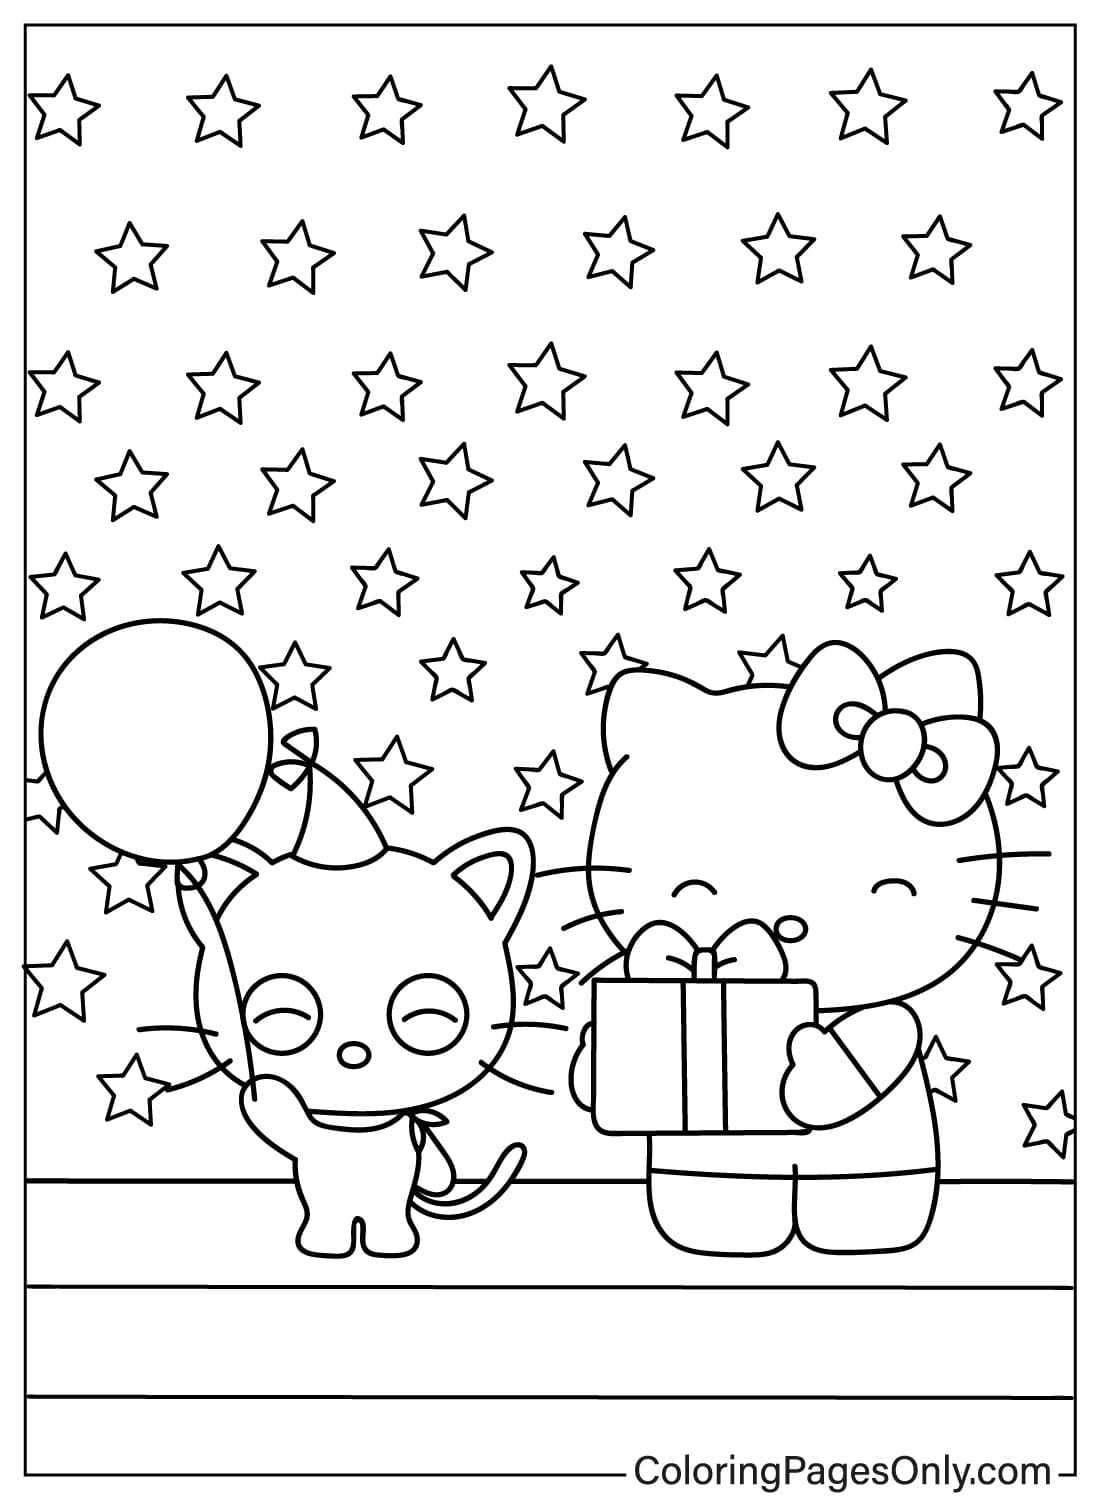 Página para colorear de Chococat y Hello Kitty de Chococat